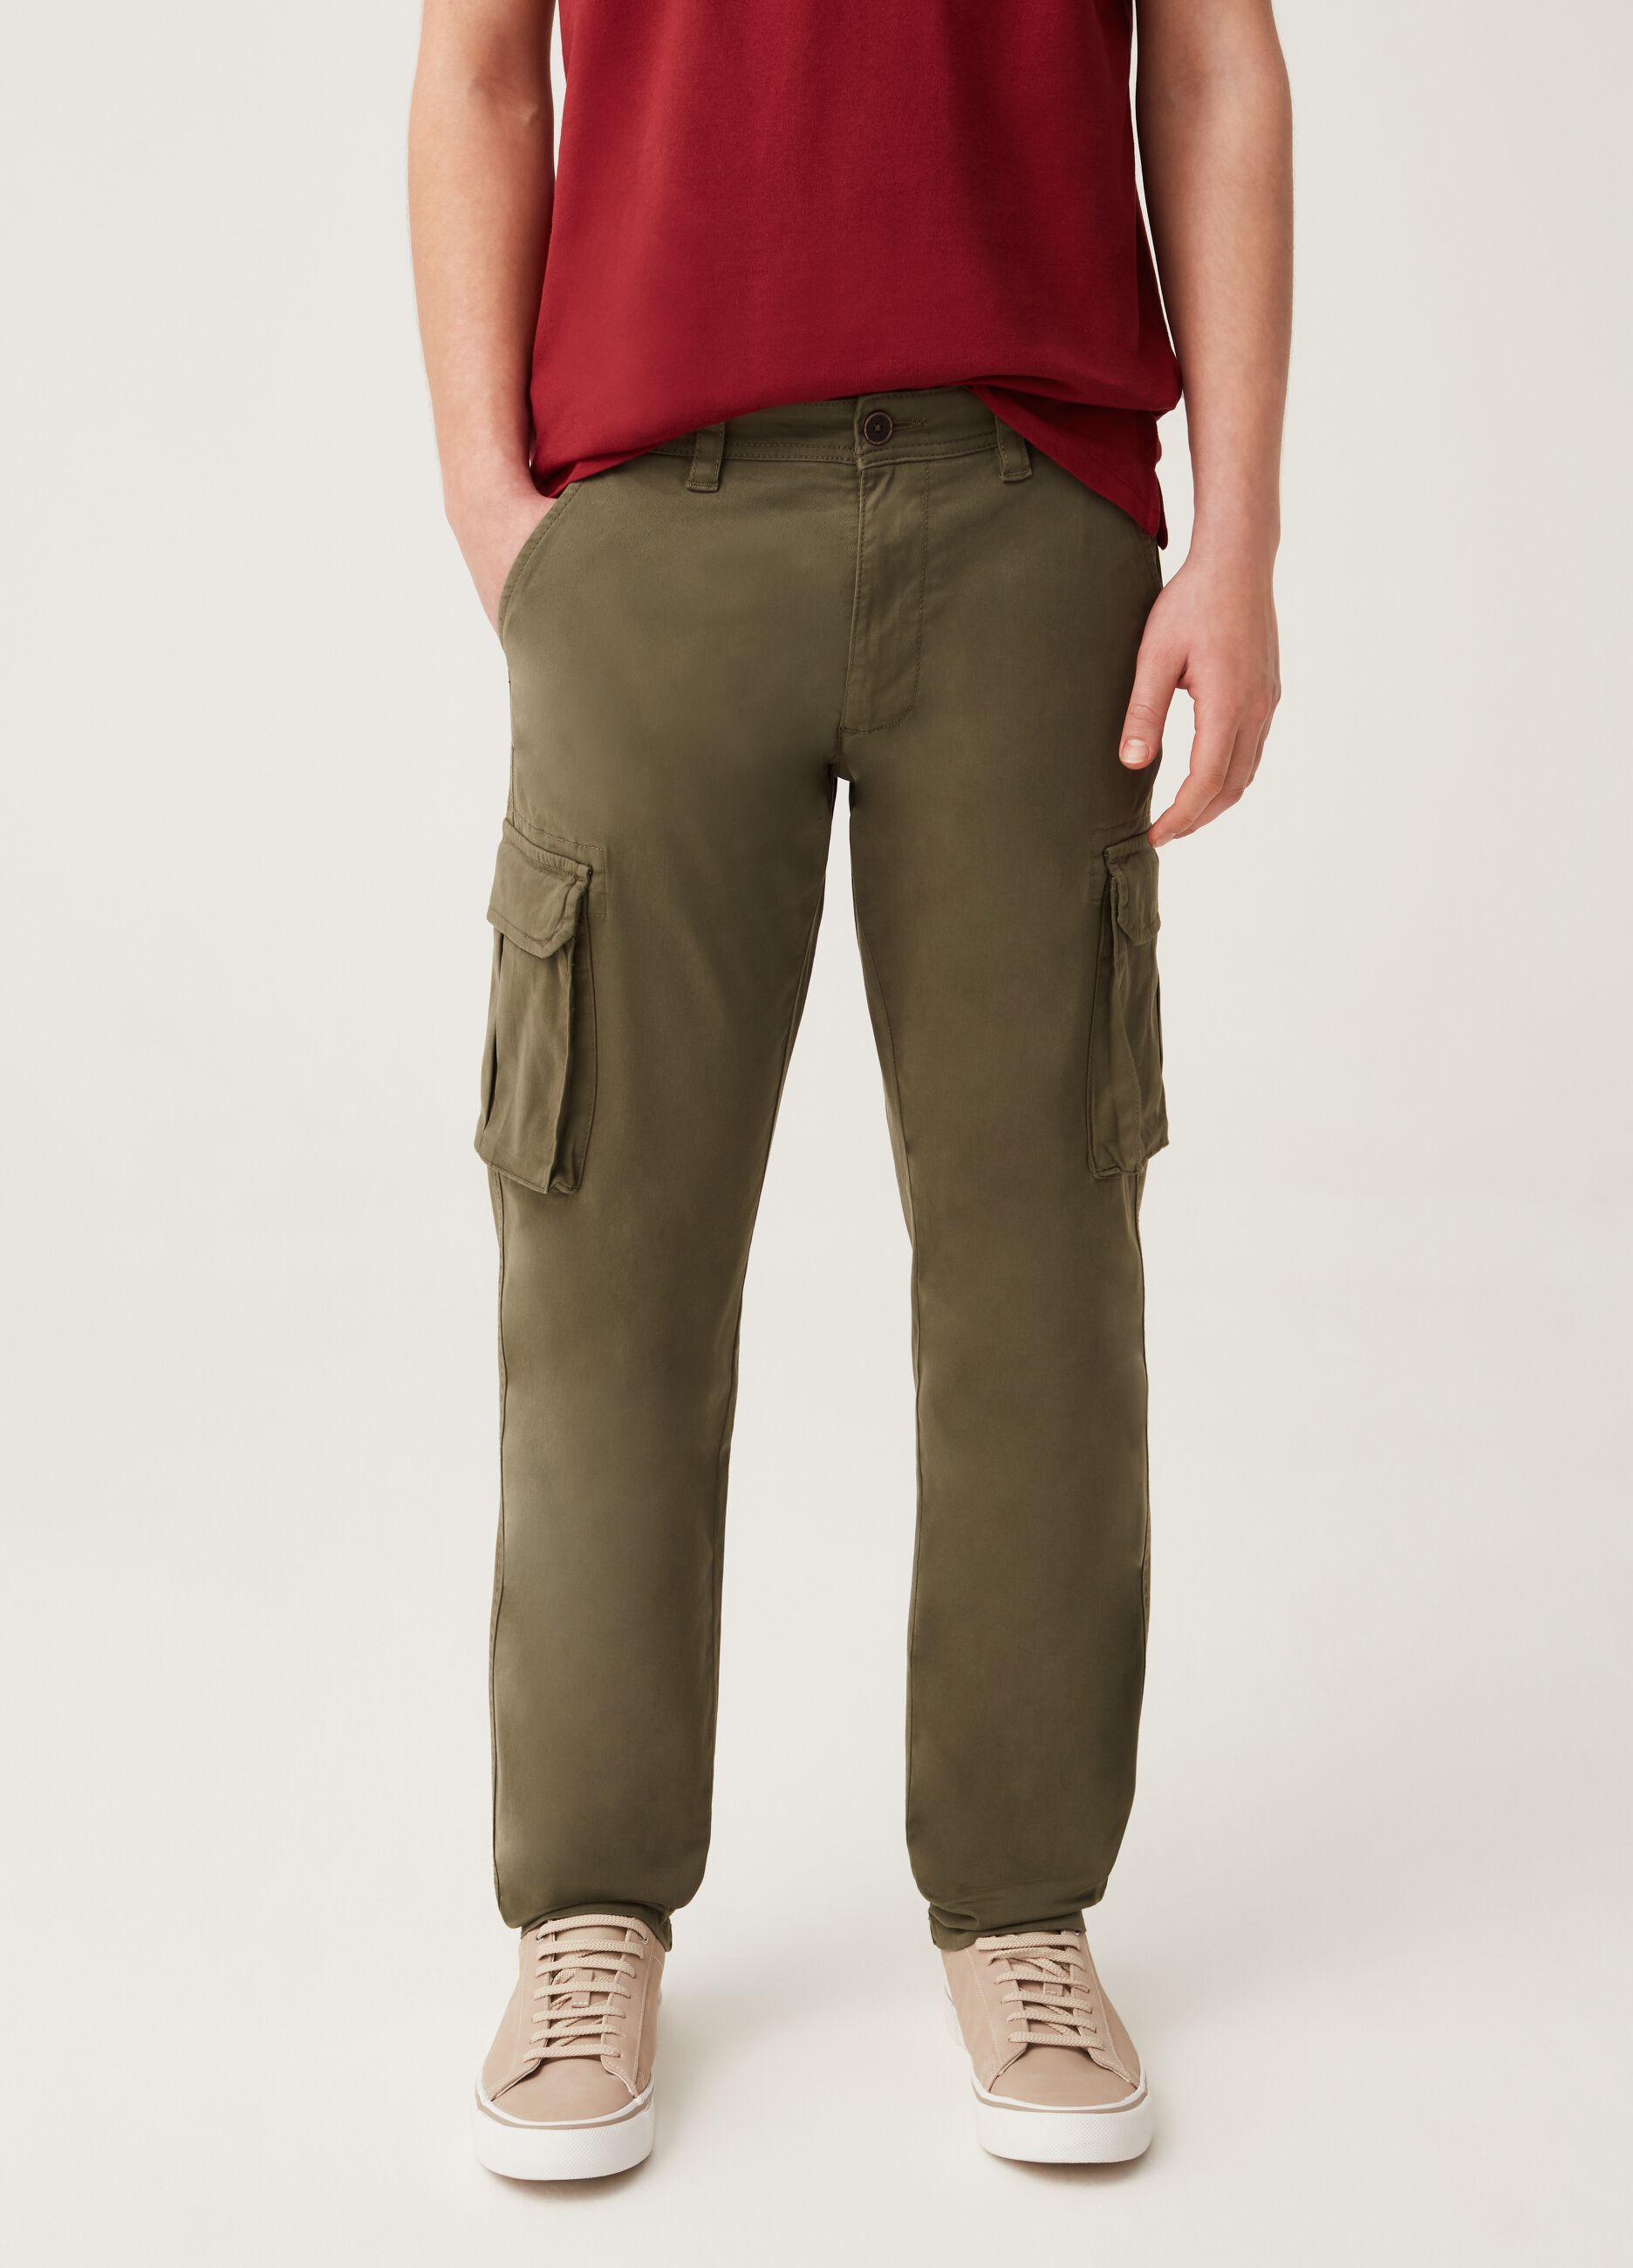 Pantaloni cargo in cotone tinto filo stretch